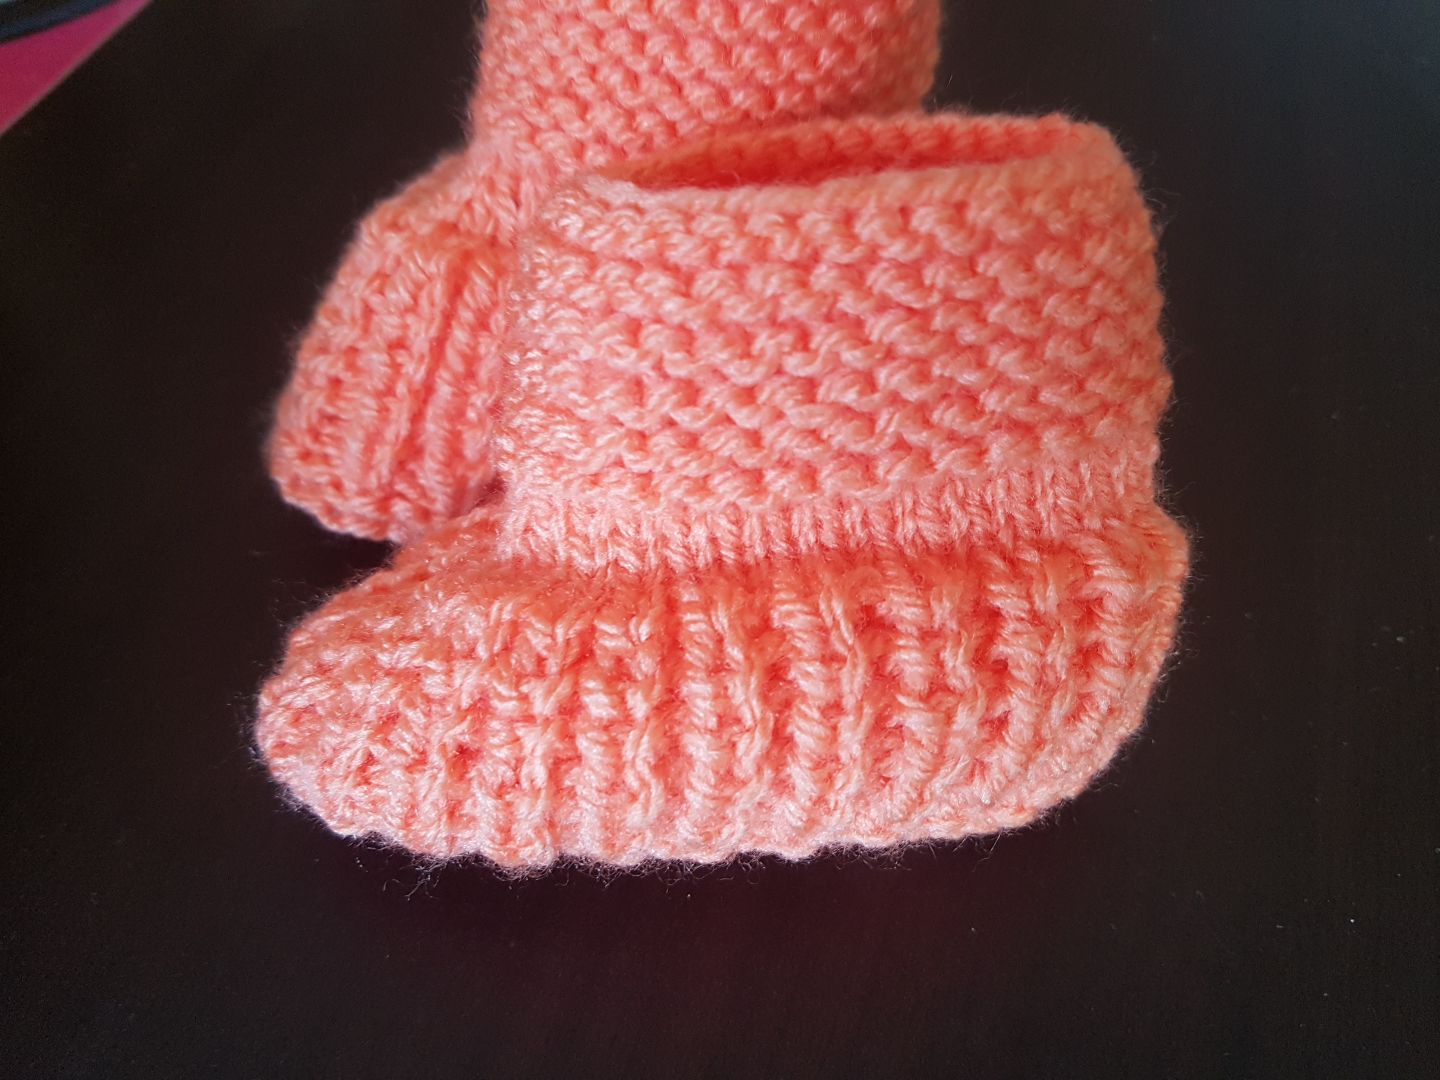 0-3 mois nœud en satin Bébé tricot pour bébé Chaussons NEUF 